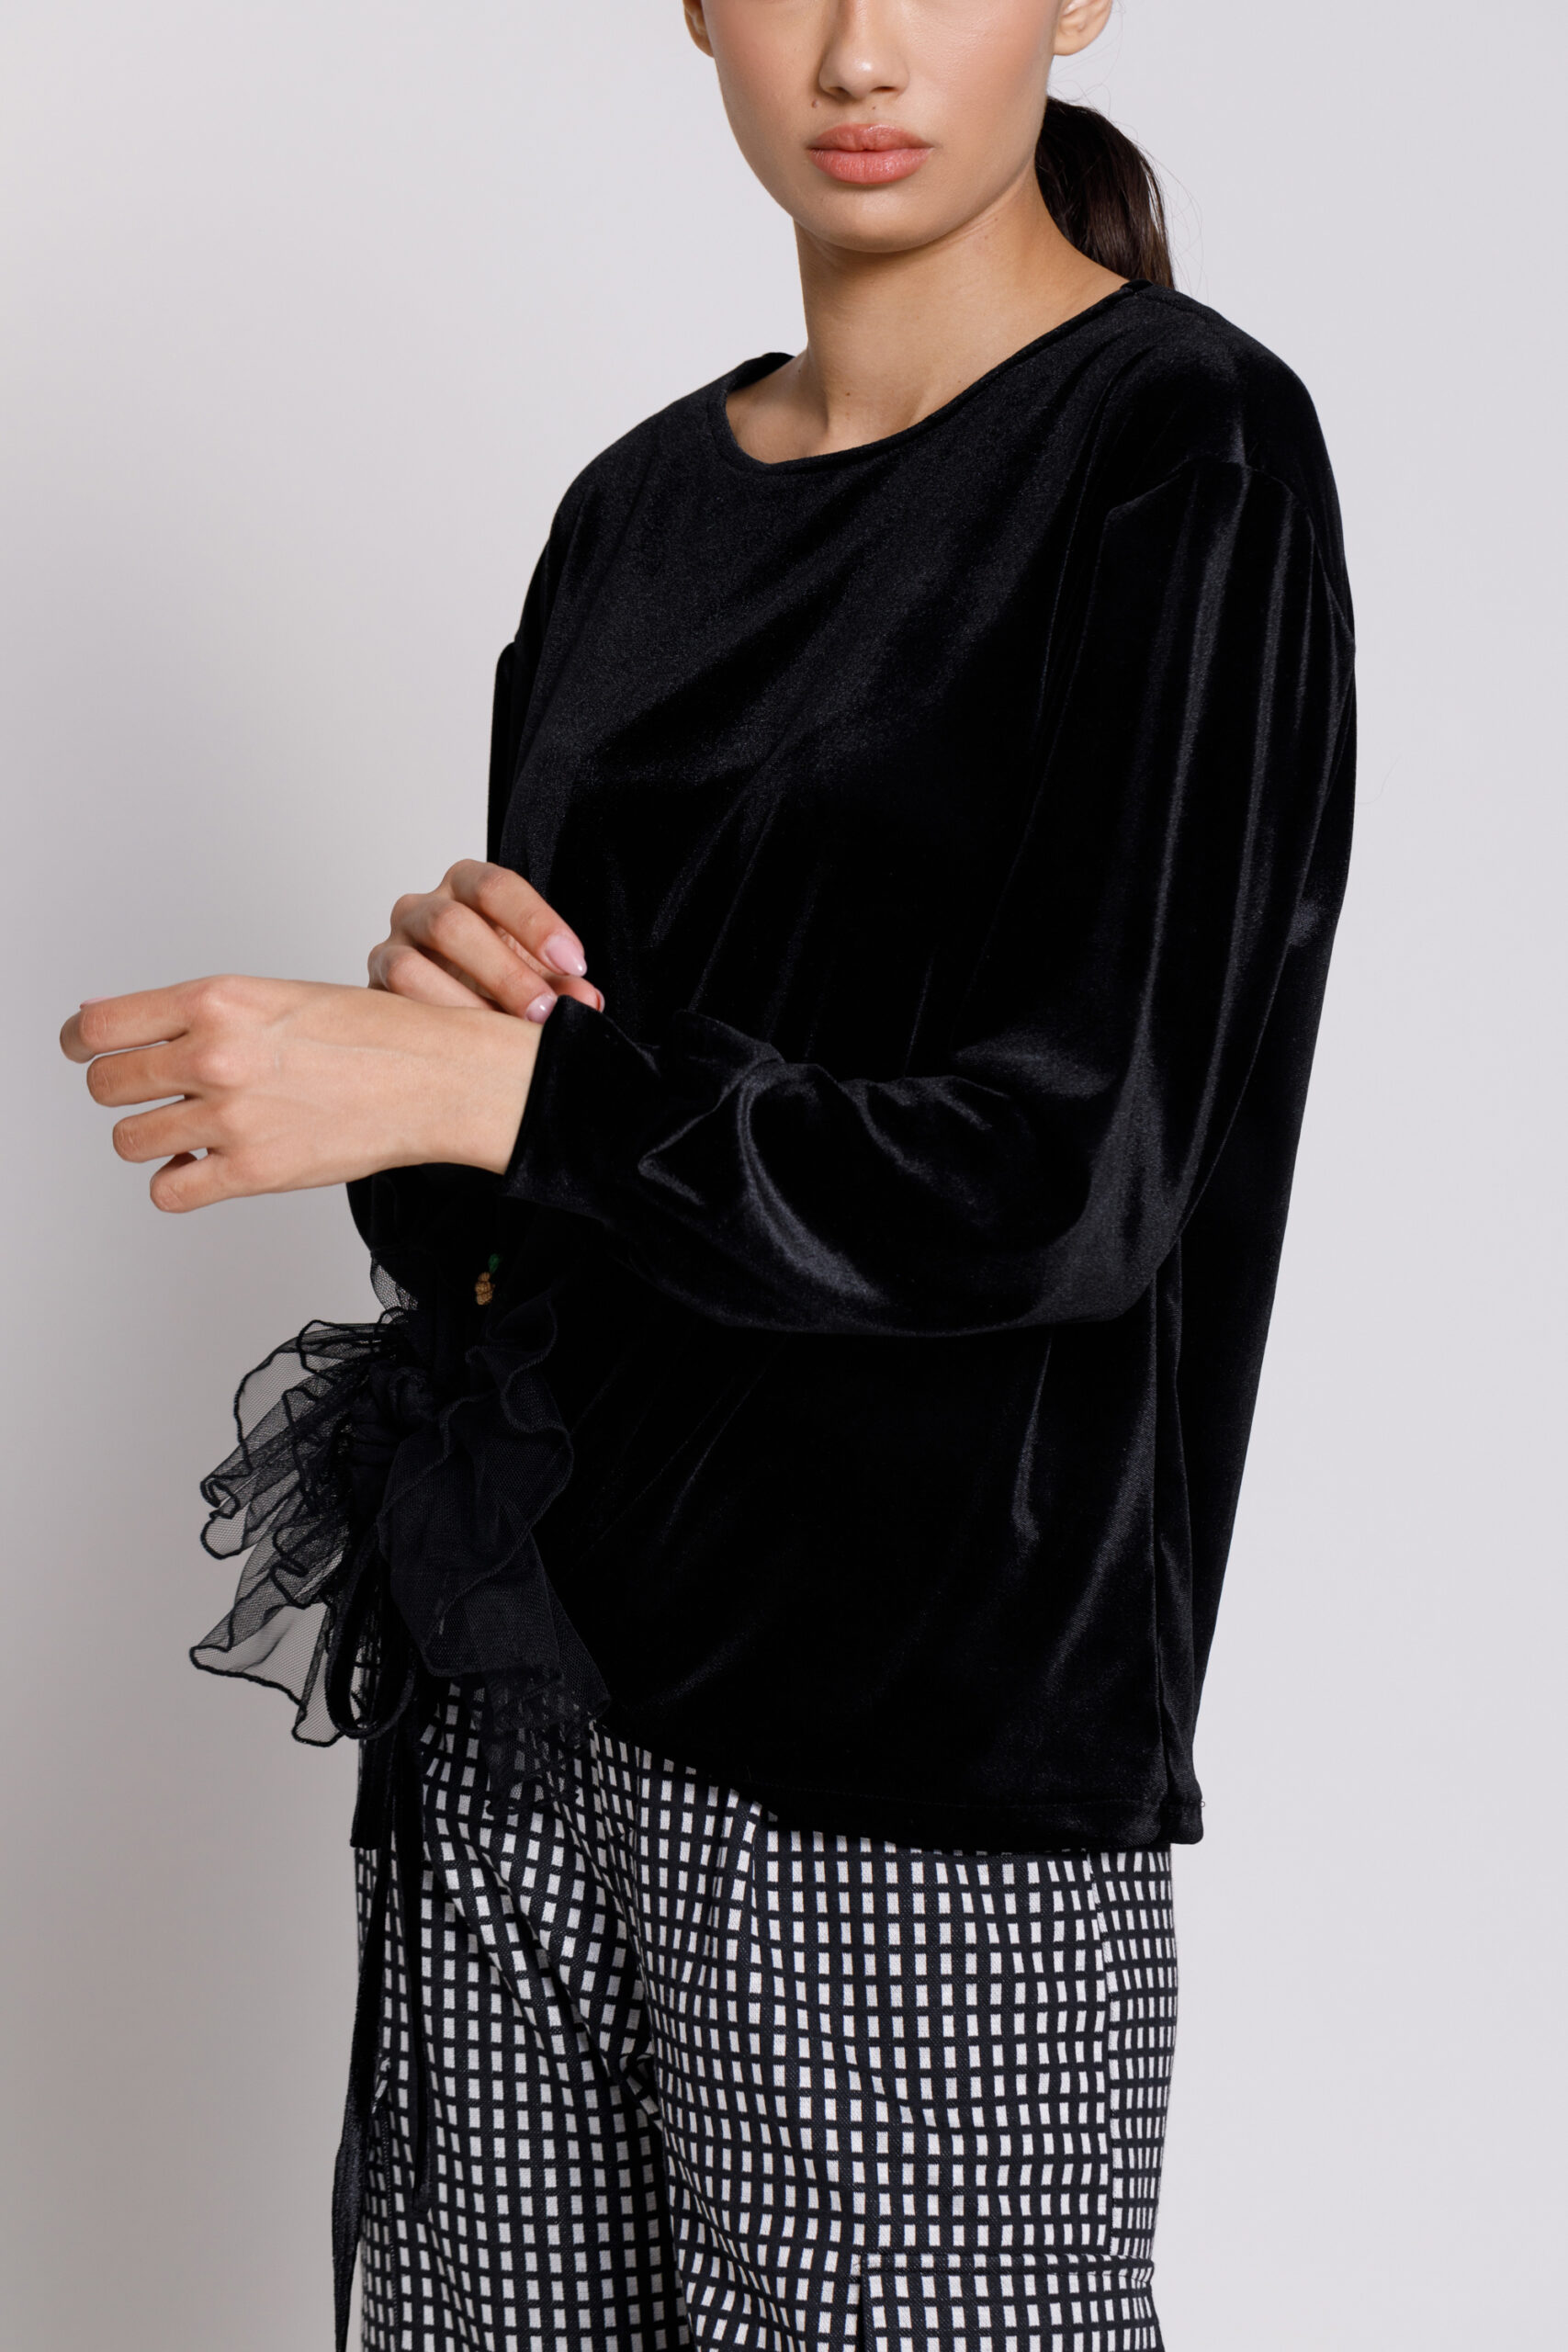 Bluza EVE casual din catifea neagra. Materiale naturale, design unicat, cu broderie si aplicatii handmade